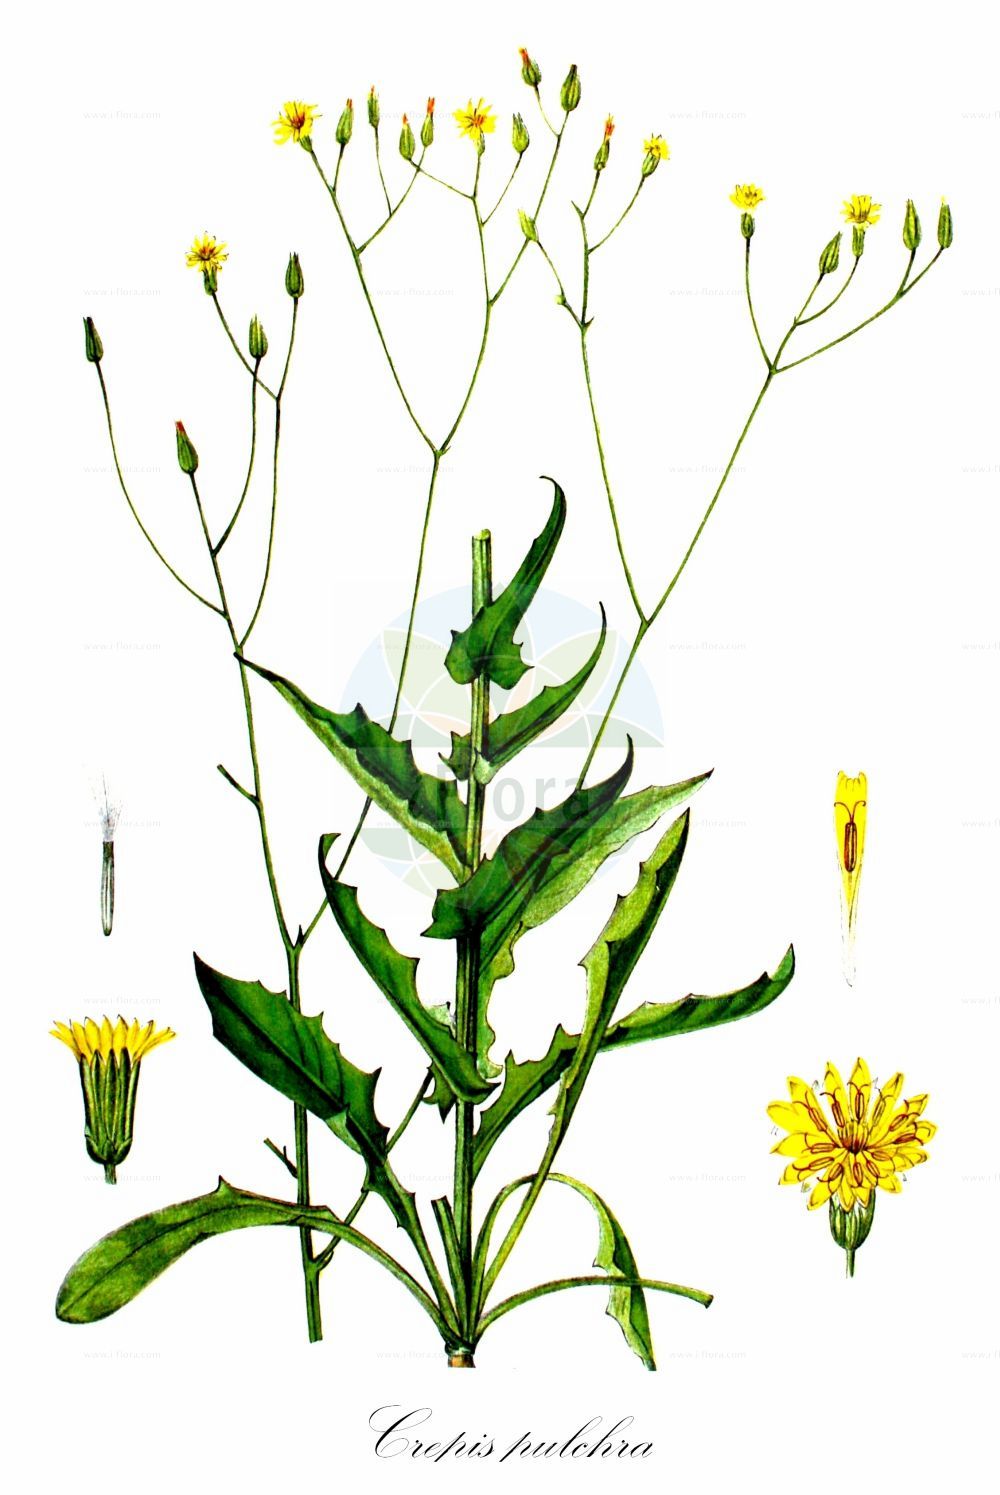 Historische Abbildung von Crepis pulchra (Schöner Pippau - Small-flowered Hawk's-Beard). Das Bild zeigt Blatt, Bluete, Frucht und Same. ---- Historical Drawing of Crepis pulchra (Schöner Pippau - Small-flowered Hawk's-Beard). The image is showing leaf, flower, fruit and seed.(Crepis pulchra,Schöner Pippau,Small-flowered Hawk's-Beard,Crepis hispanica,Crepis pulcherrima,Crepis pulchra,Schoener Pippau,Small-flowered Hawk's-Beard,Smallflower Hawksbeard,Crepis,Pippau,Hawk's-beard,Asteraceae,Korbblütengewächse,Daisy family,Blatt,Bluete,Frucht,Same,leaf,flower,fruit,seed,Kops (1800-1934))